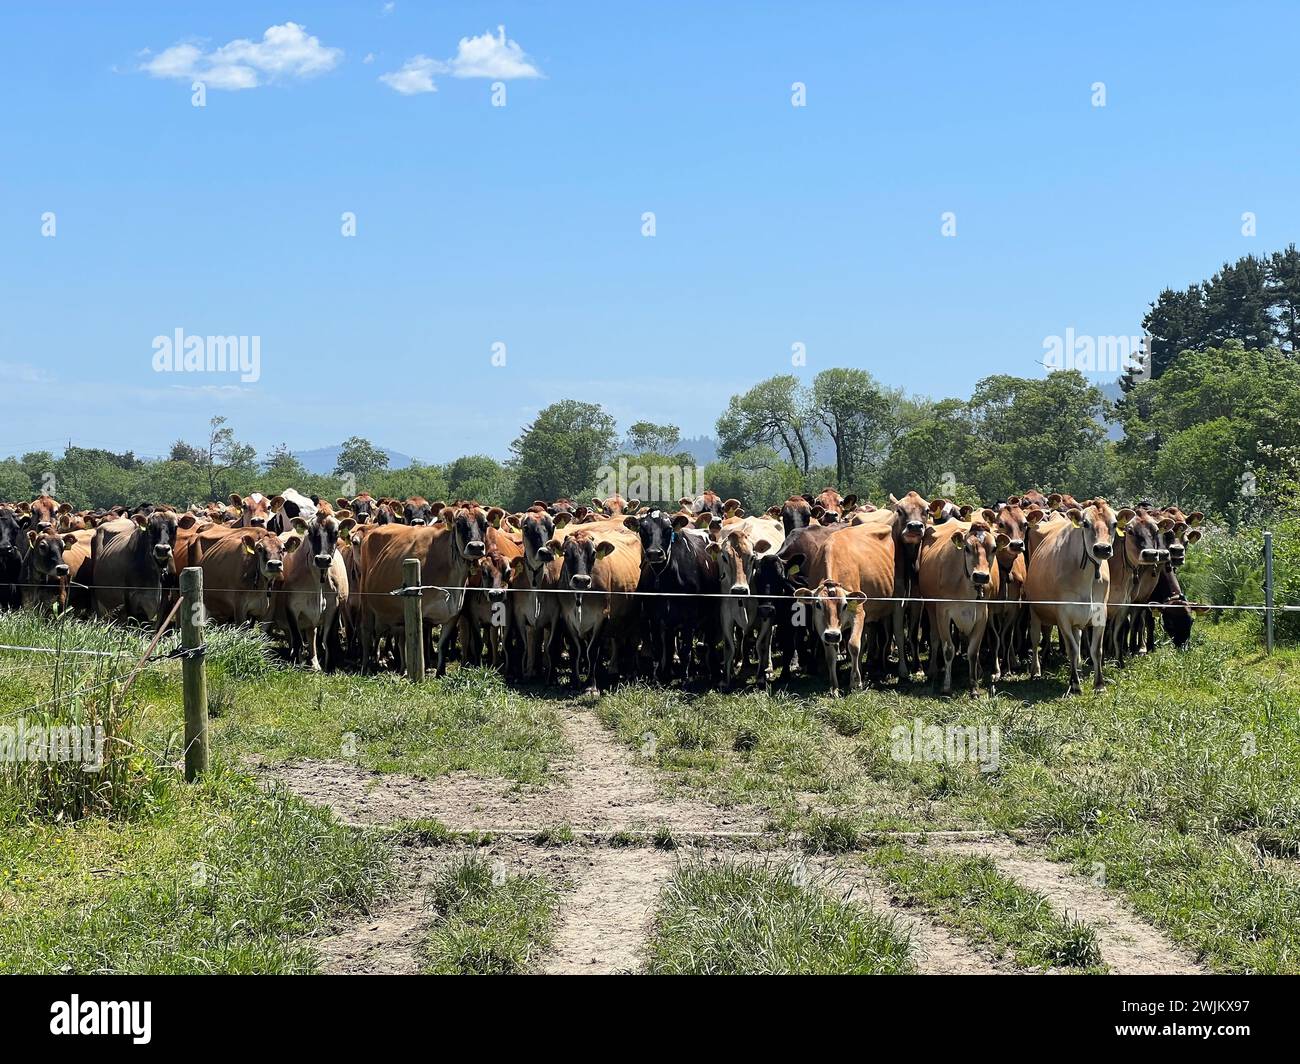 Le vacche da latte Jersey e holstein aspettano dietro il cancello Foto Stock